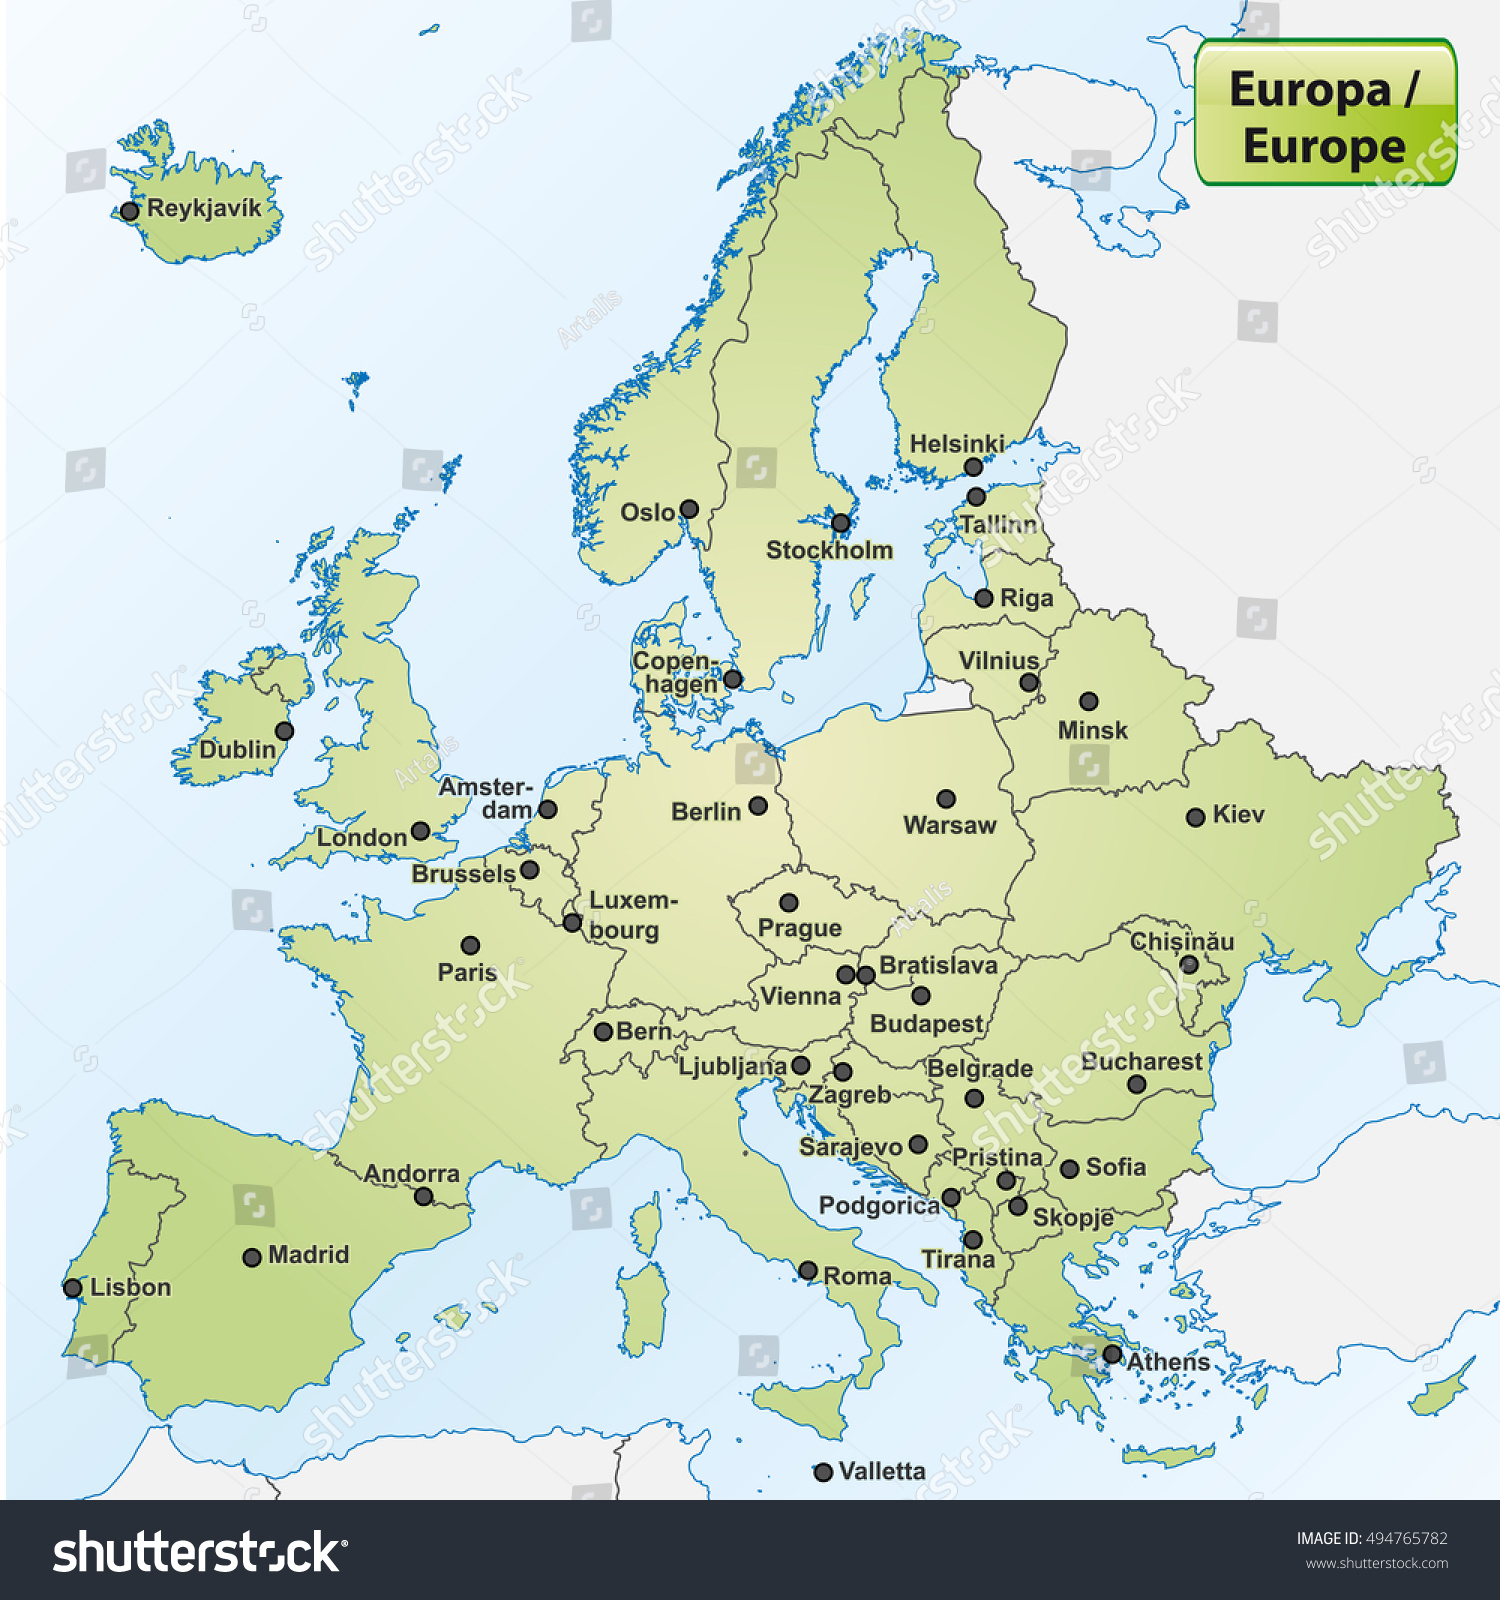 Image Vectorielle De Stock De Carte De L'europe Avec Les avec Carte D Europe Capitale